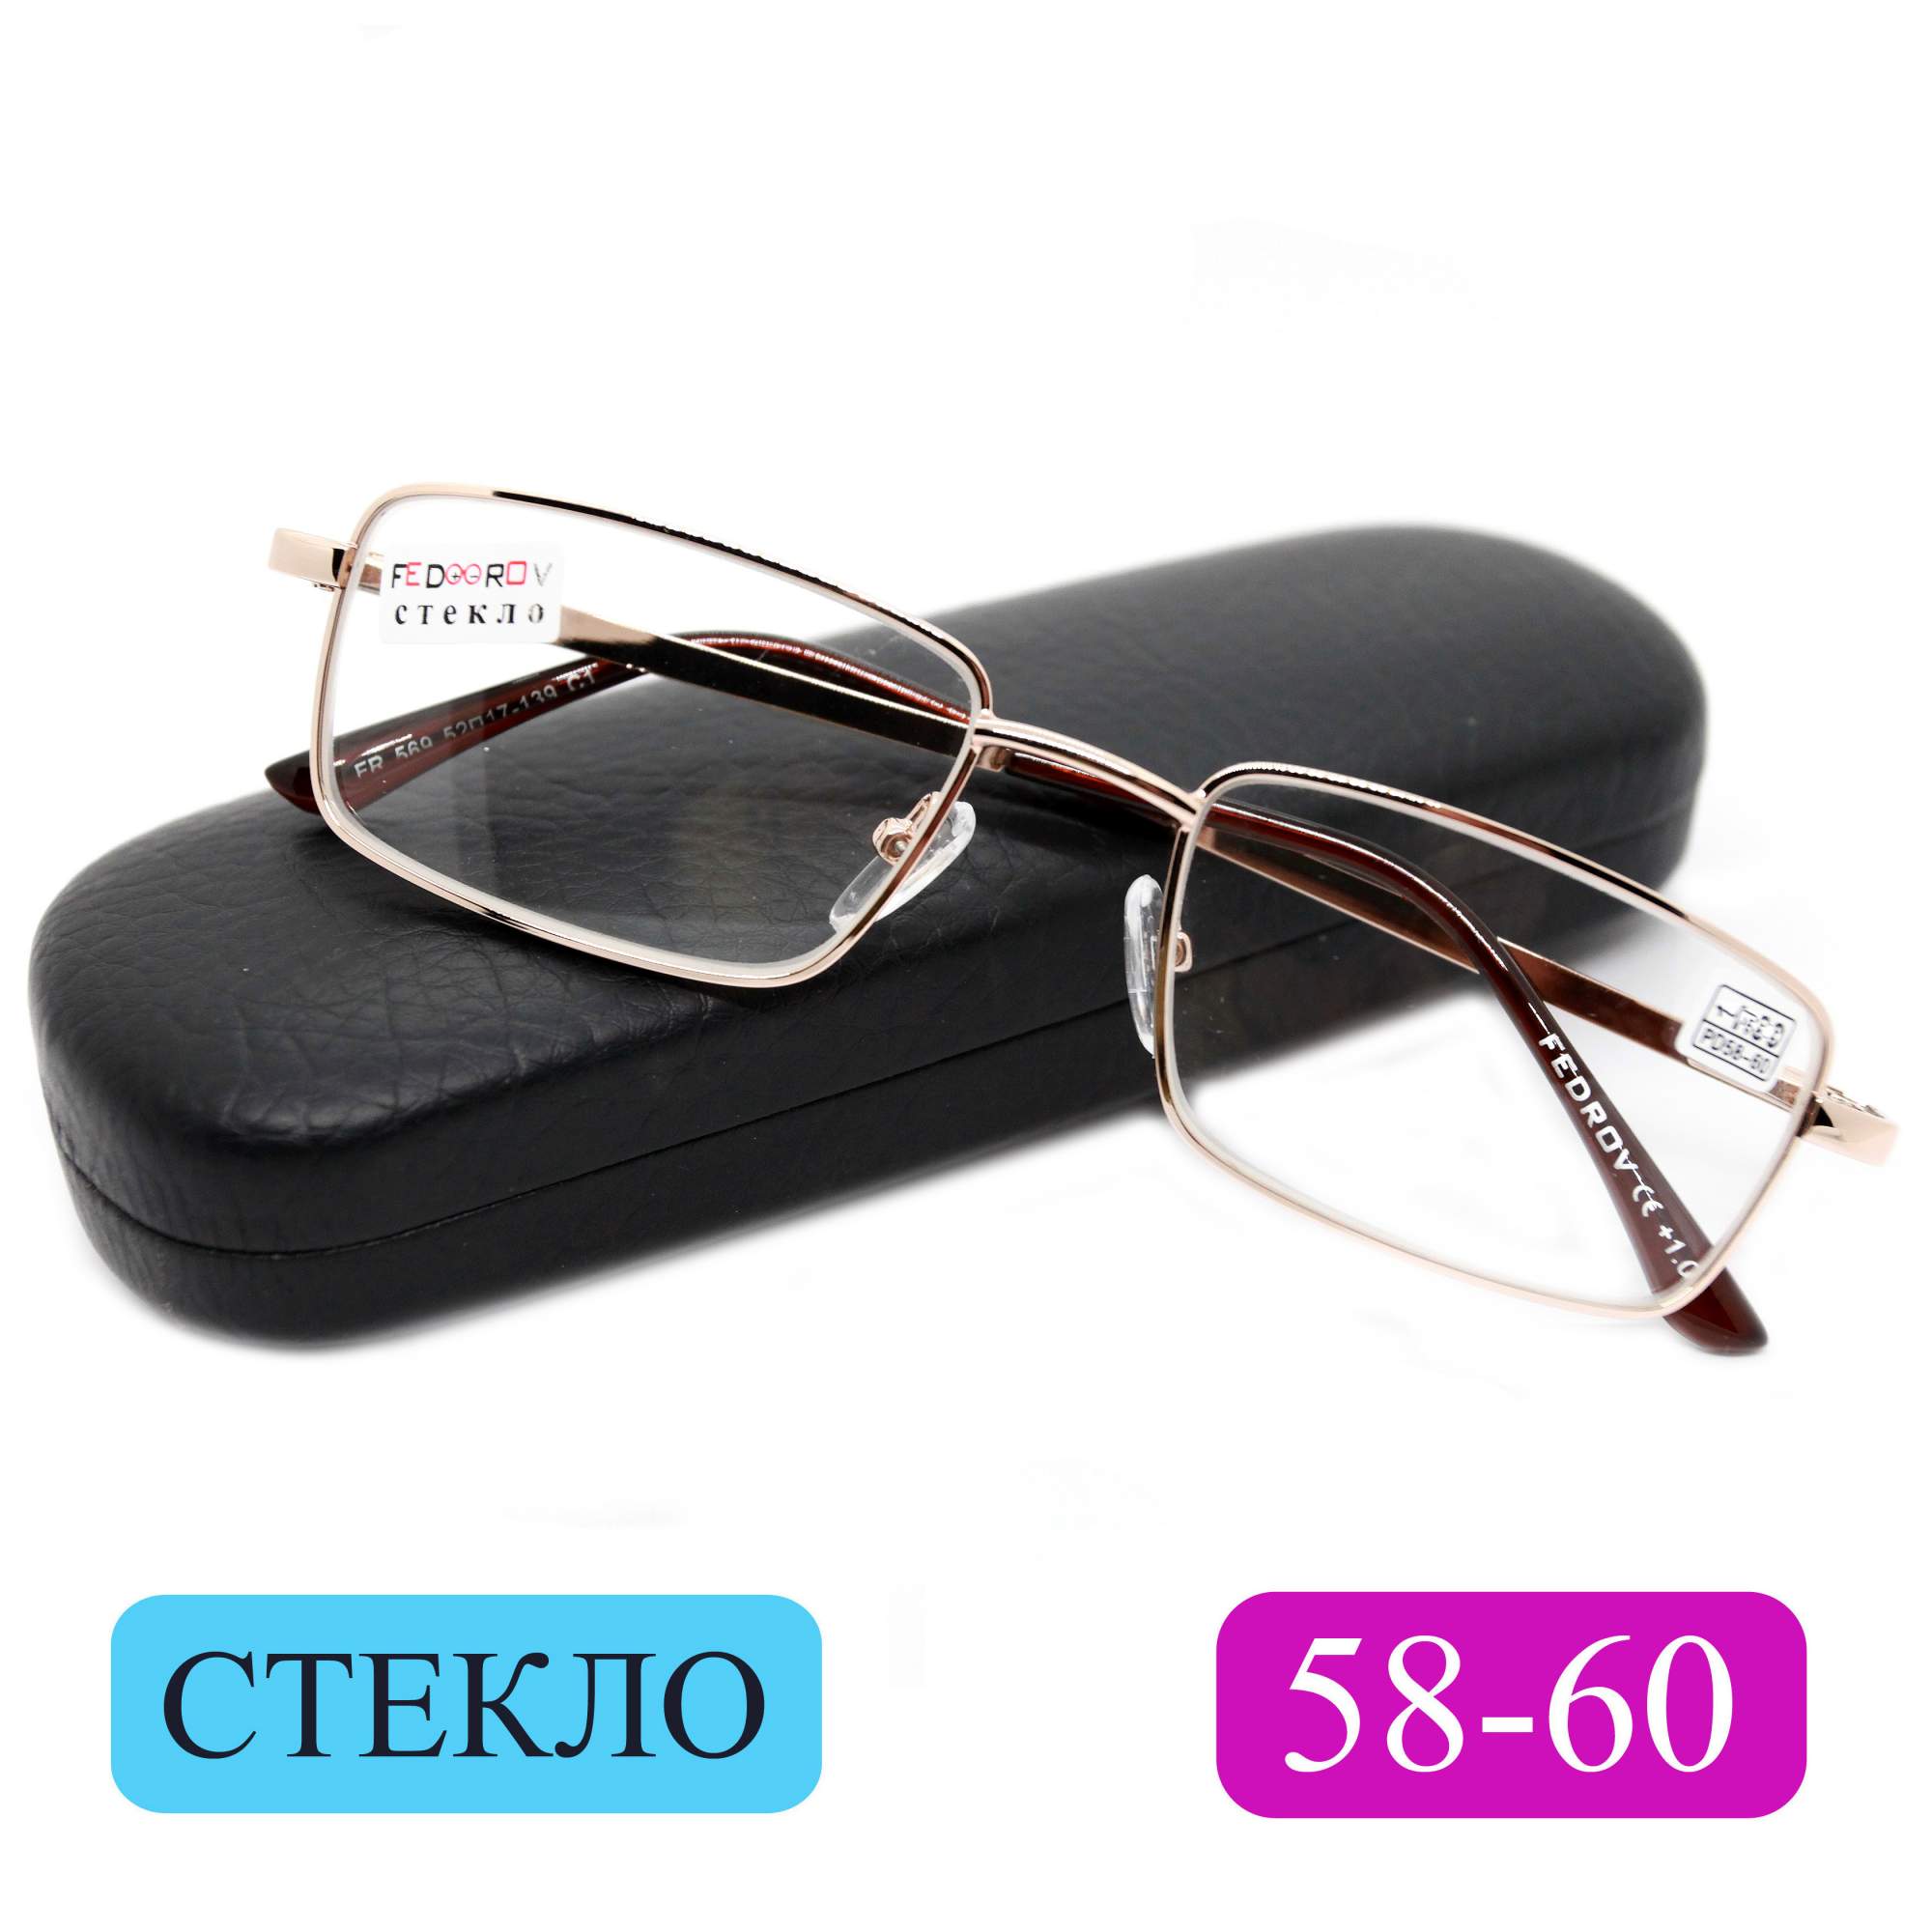 Готовые очки Fedrov 569, со стеклянной линзой, +1,75, c футляром, золотые, РЦ 58-60